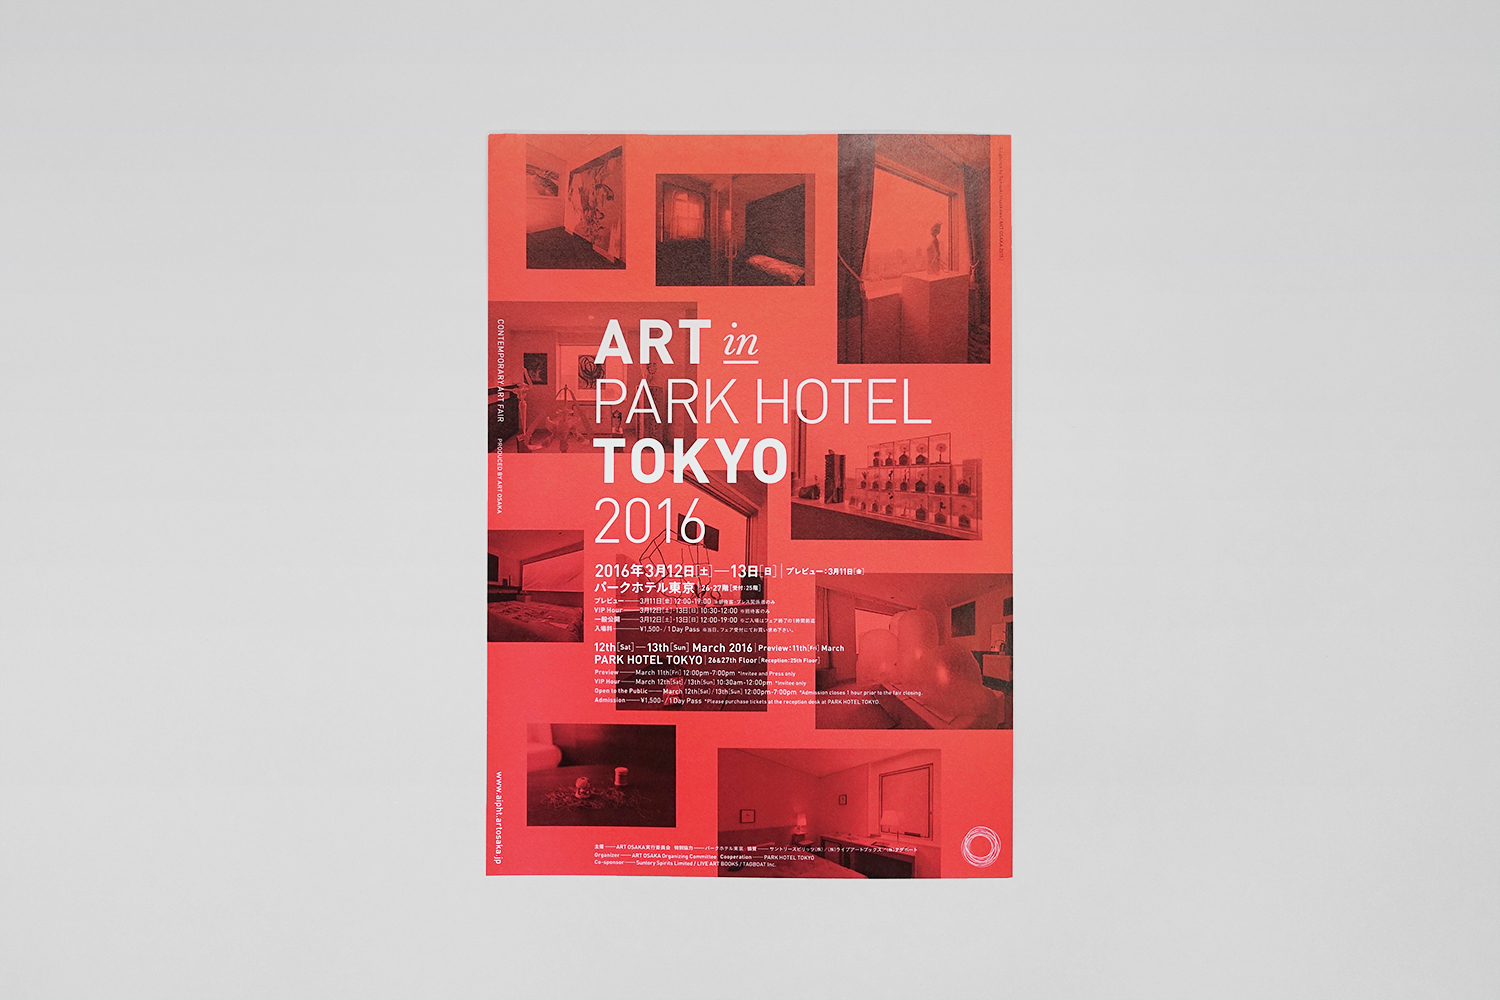 ART in PART HOTEL TOKYO 2016